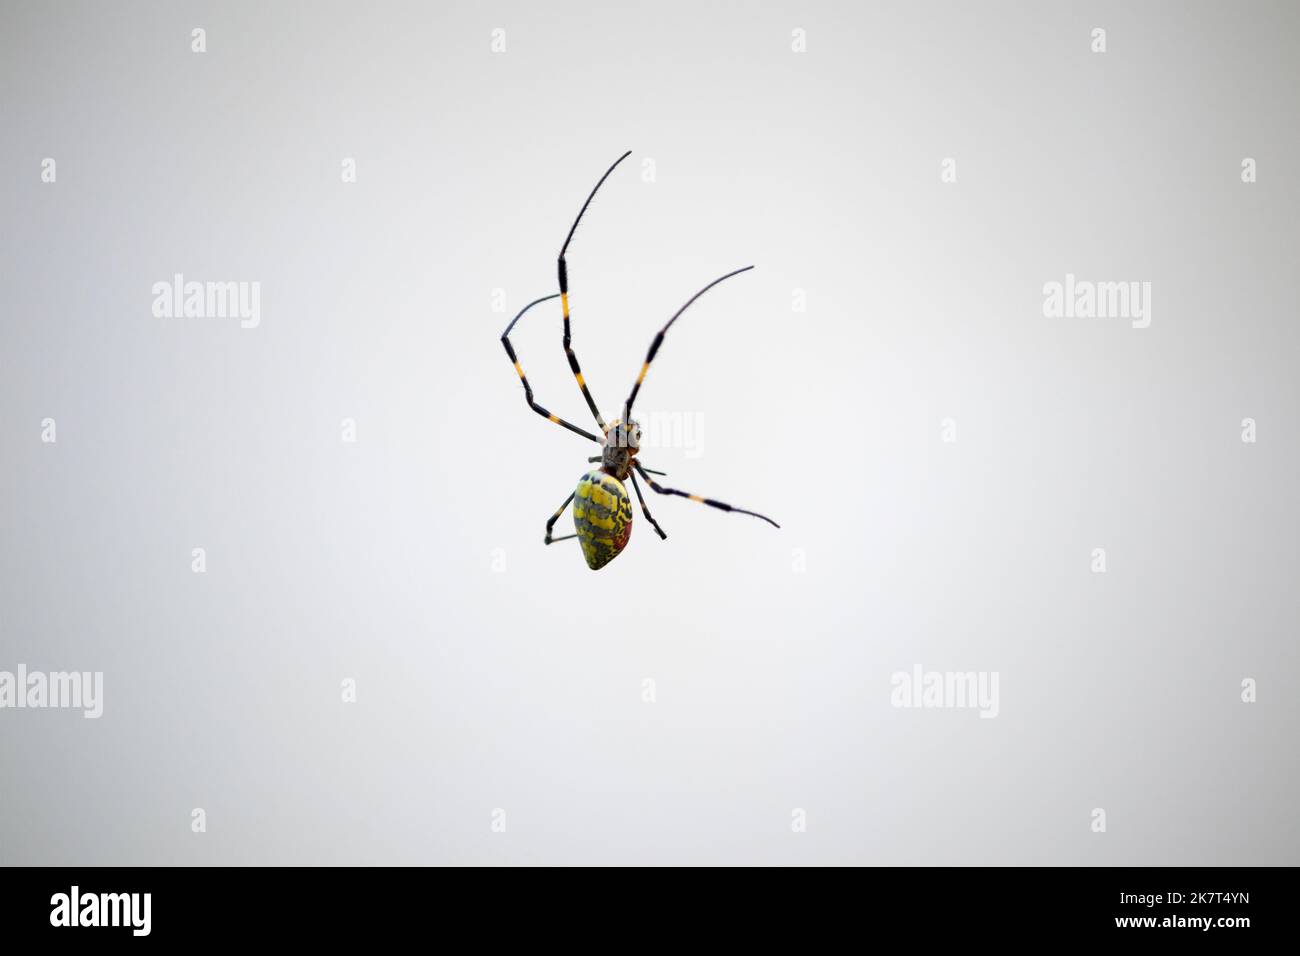 Une araignée femelle dans son web. Cette araignée est Trichonila clavata, également connue sous le nom d'araignée Jorō. Banque D'Images